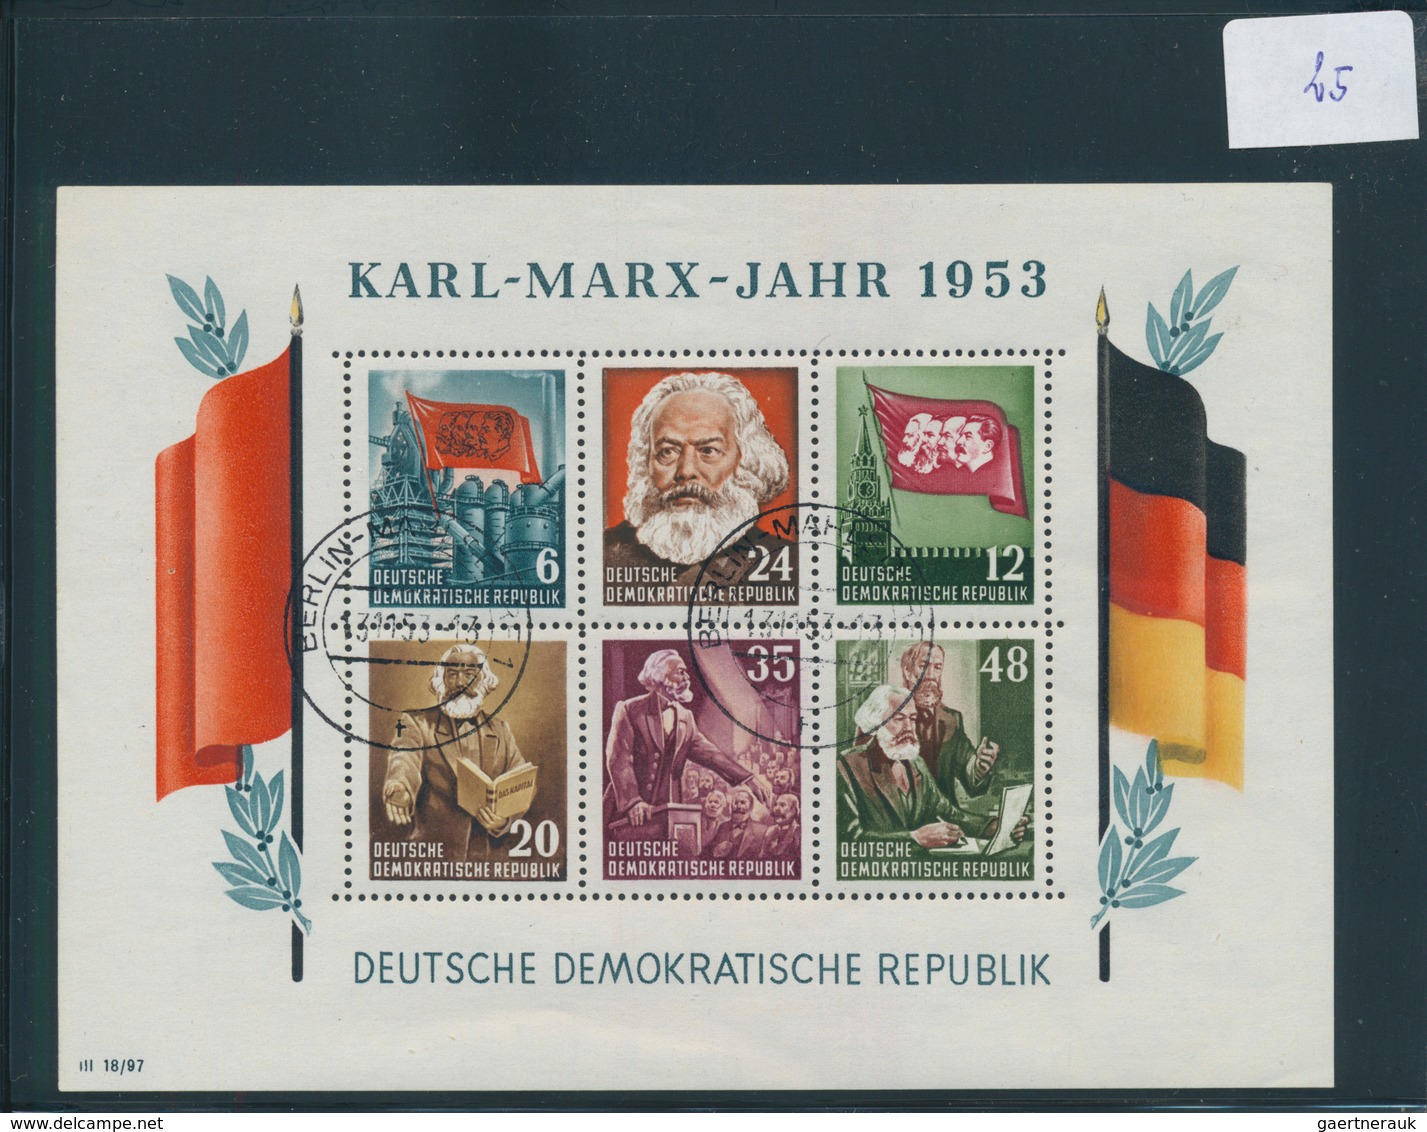 32160 Deutschland nach 1945: 1946/1953, Zusammenstellung auf Steckkarten, dabei Lokalausgaben Spremberg ge